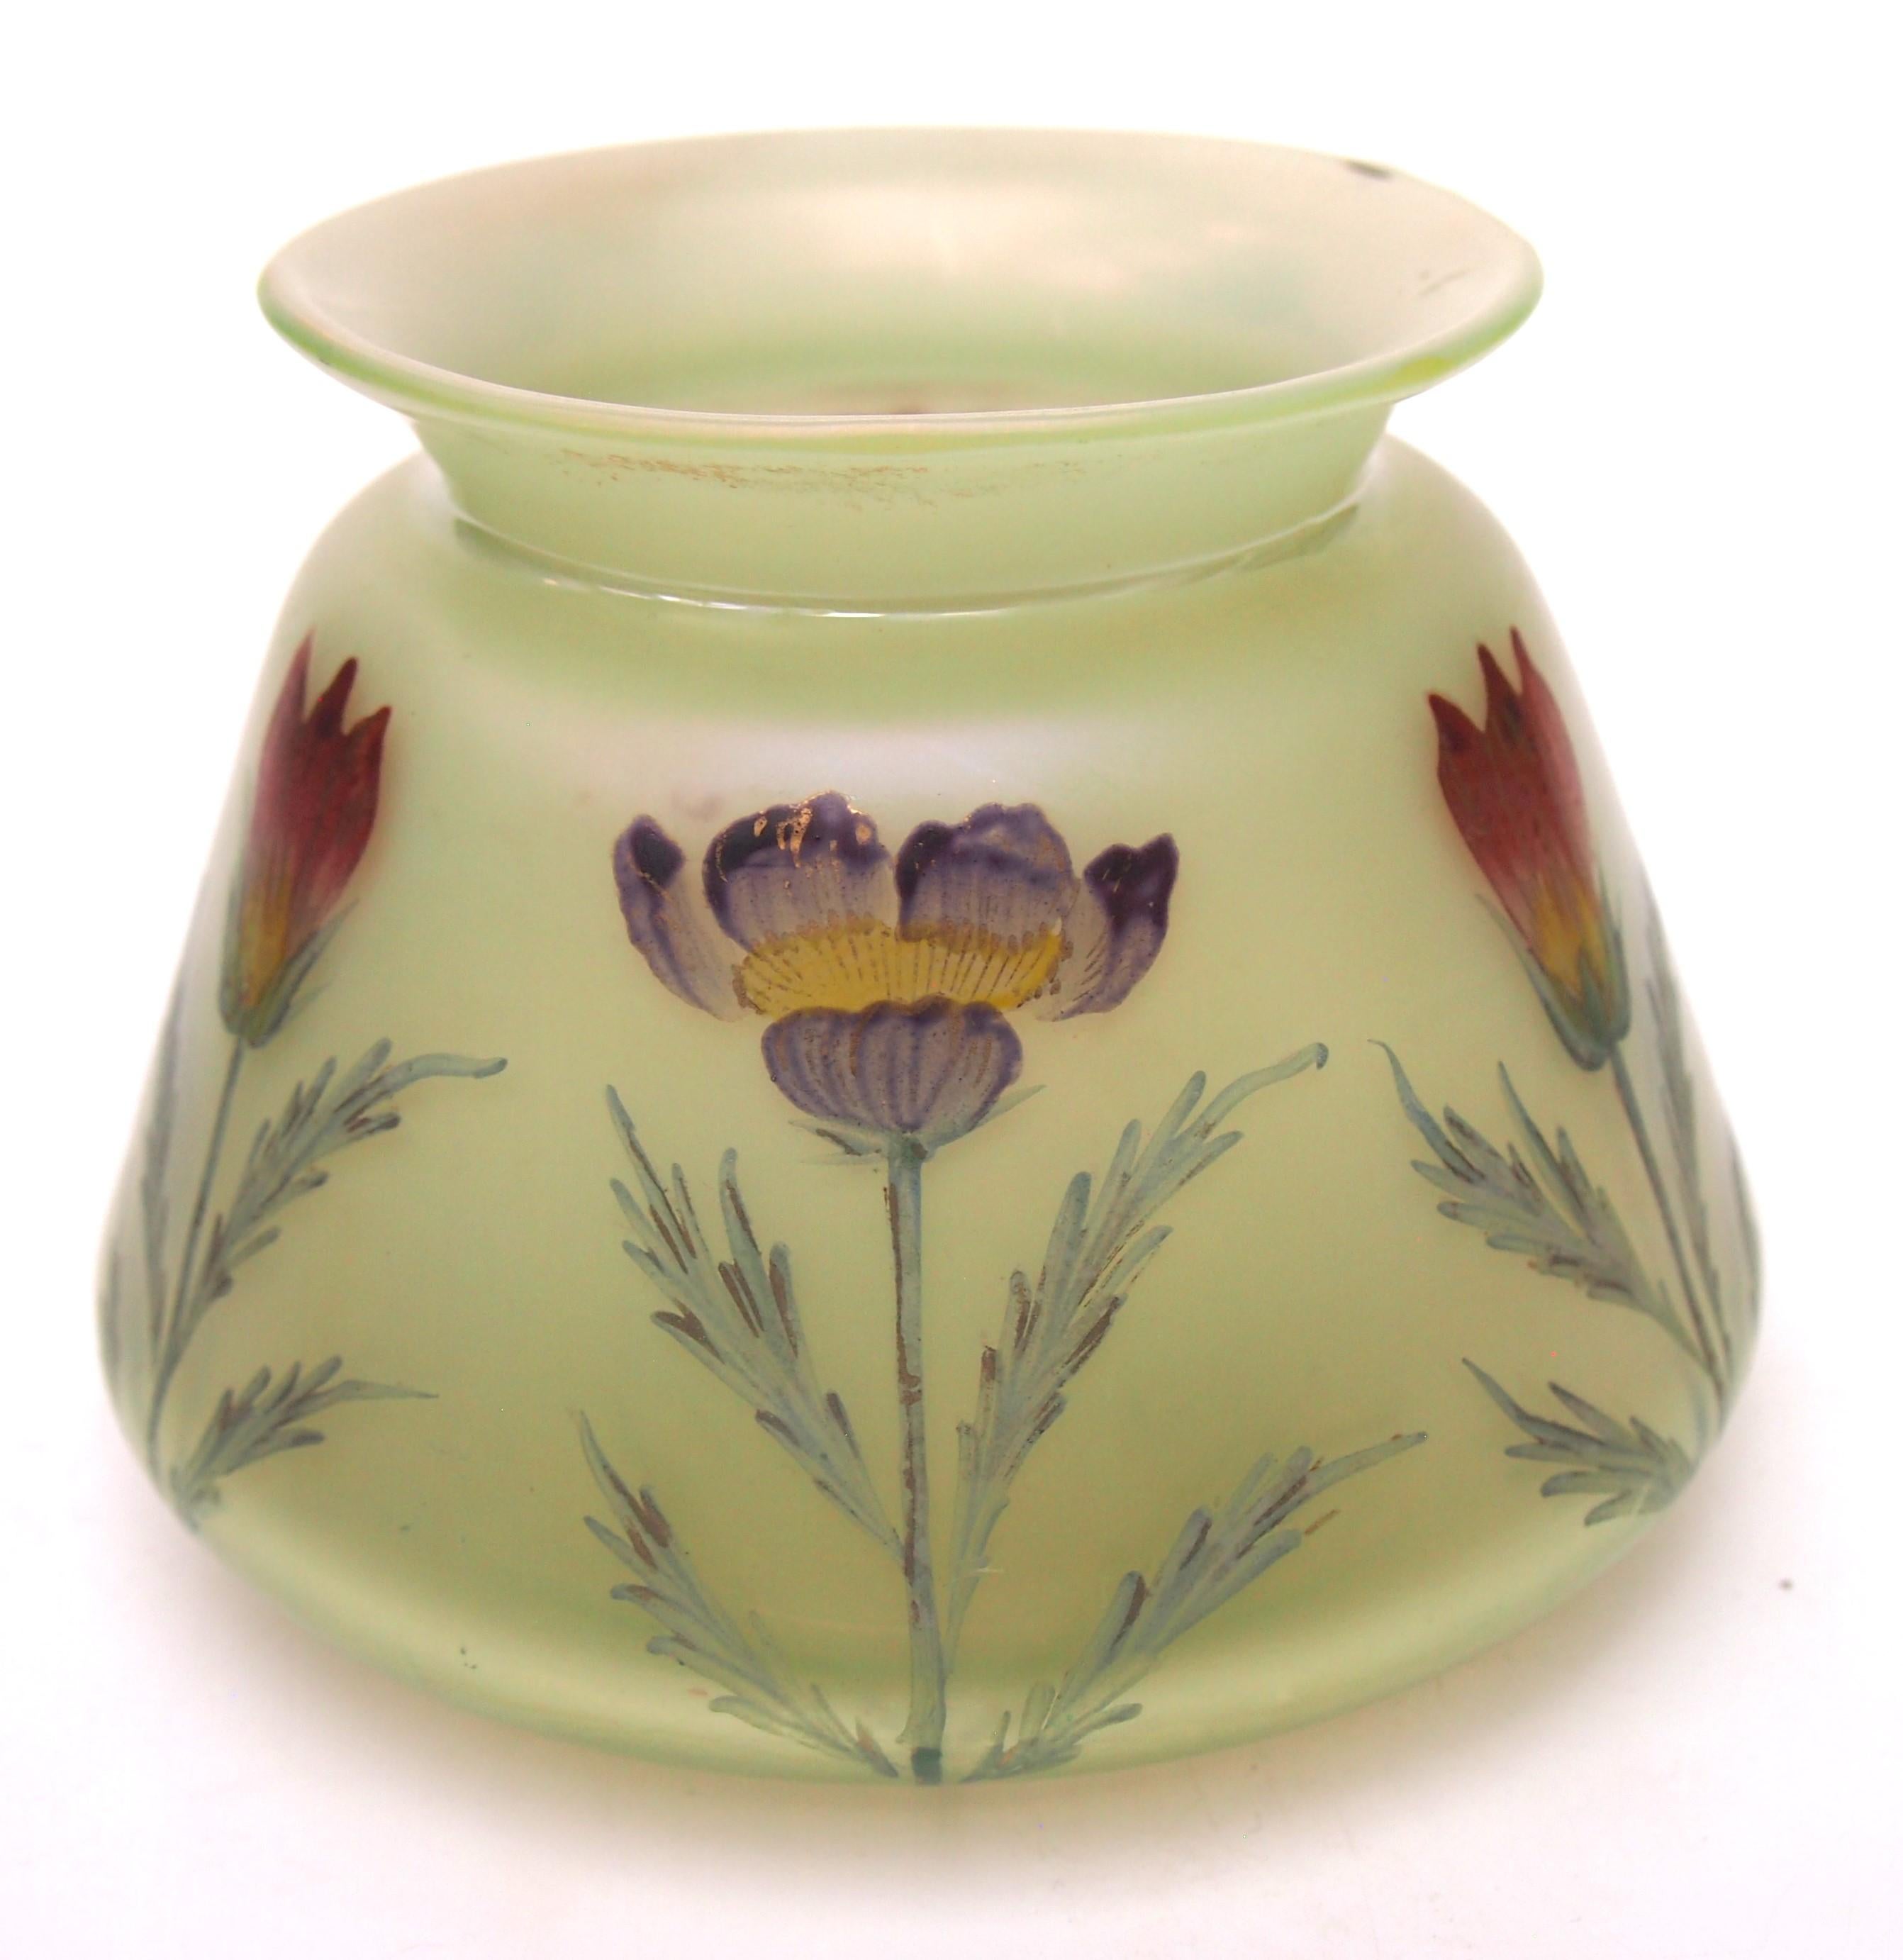 Fabuleux vase en verre Loetz de bonne taille au motif Arcadia (opale sur vert), un bol/vase bas décoré du motif Dek I/II (Anémones en violet et rouge) et de forme PNII-124 vers 1900. -Il est rare de trouver un vase Loetz aussi bien documenté et des